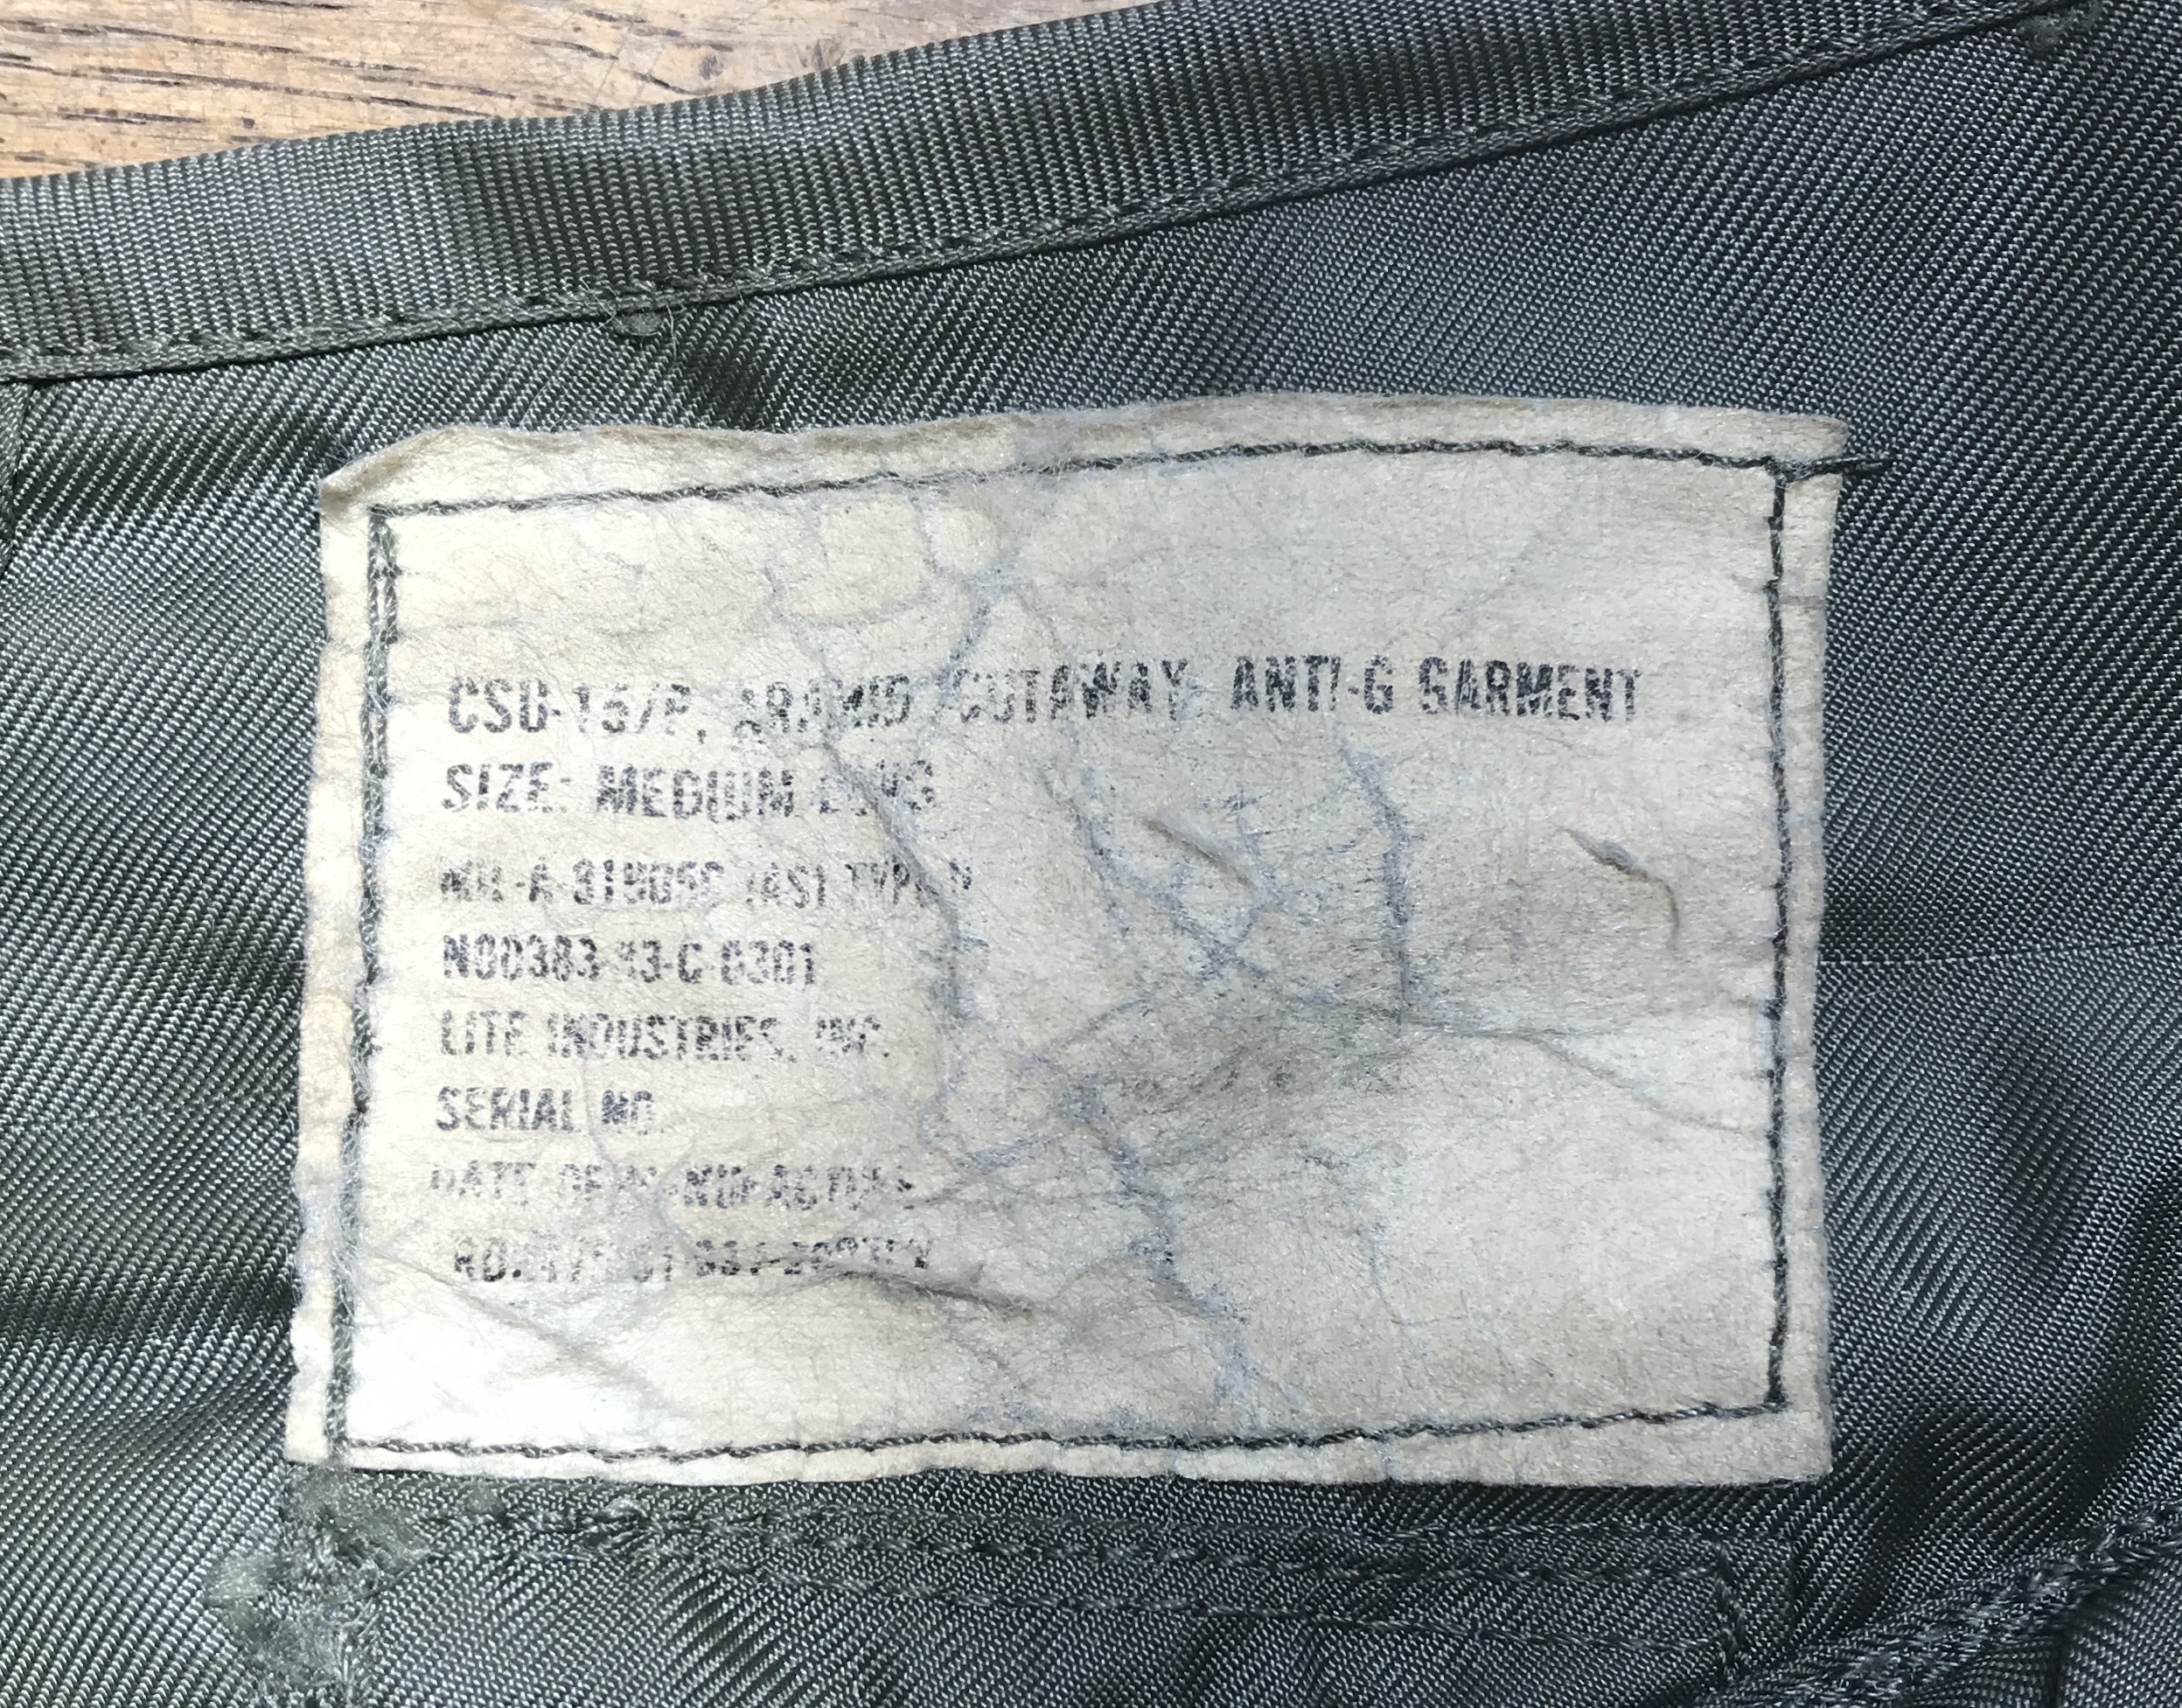 G-Suit | Vintage Leather Jackets Forum